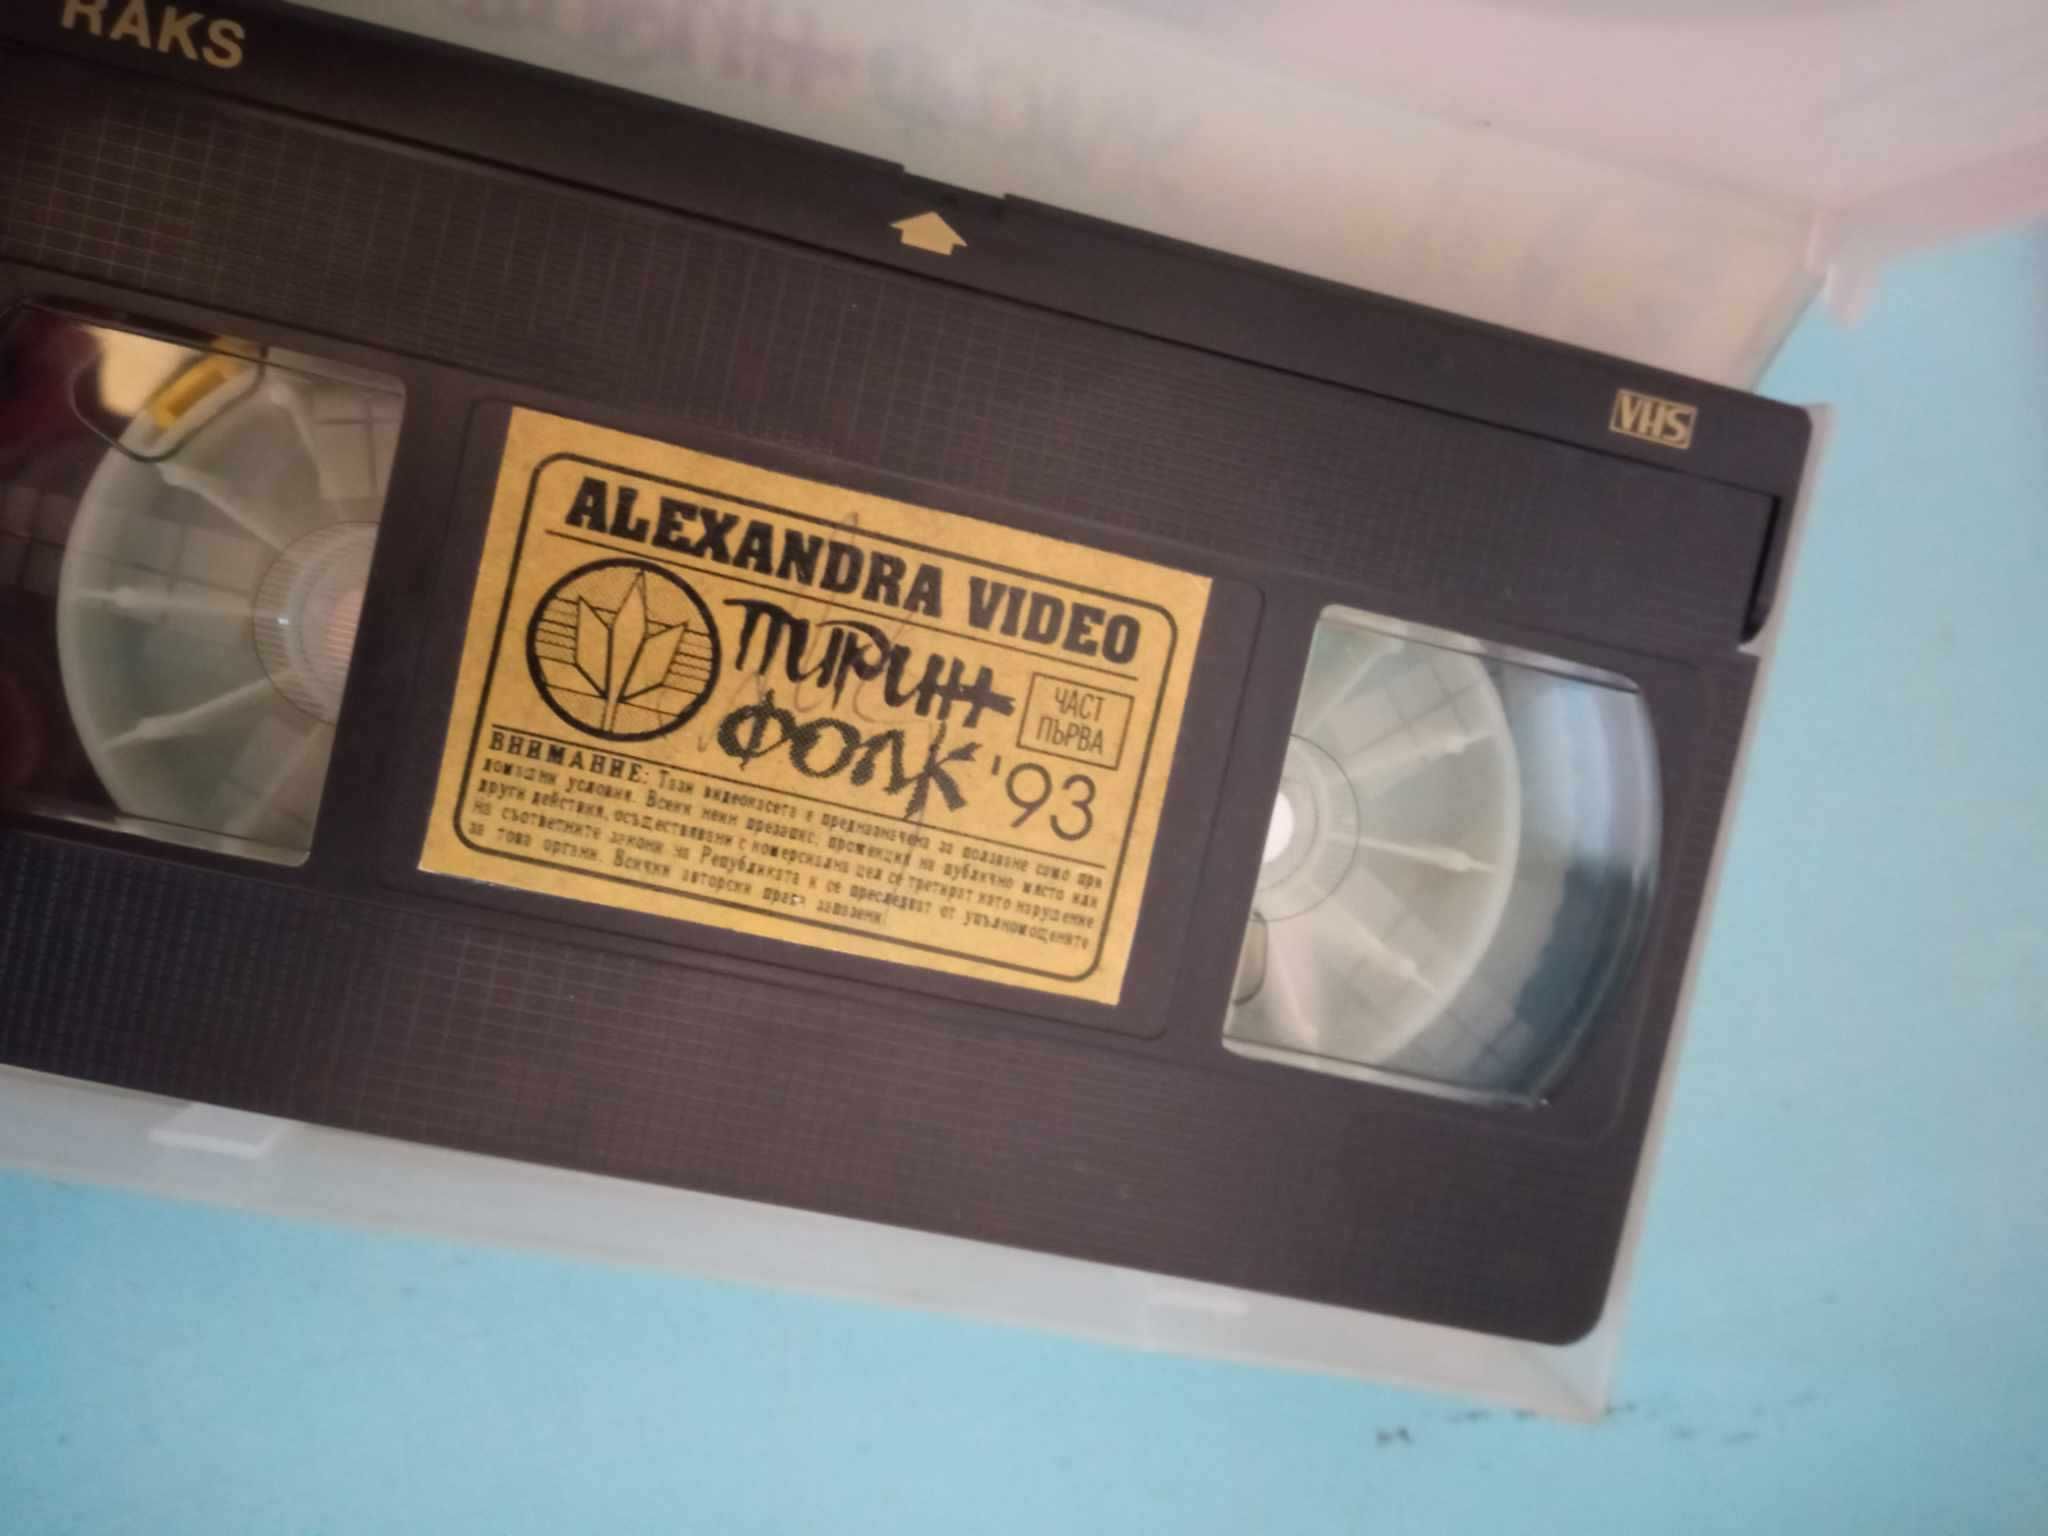 Оригинални видеокасети (Слави, Пирин Фолк, сръбско) и DVD на Sean Paul